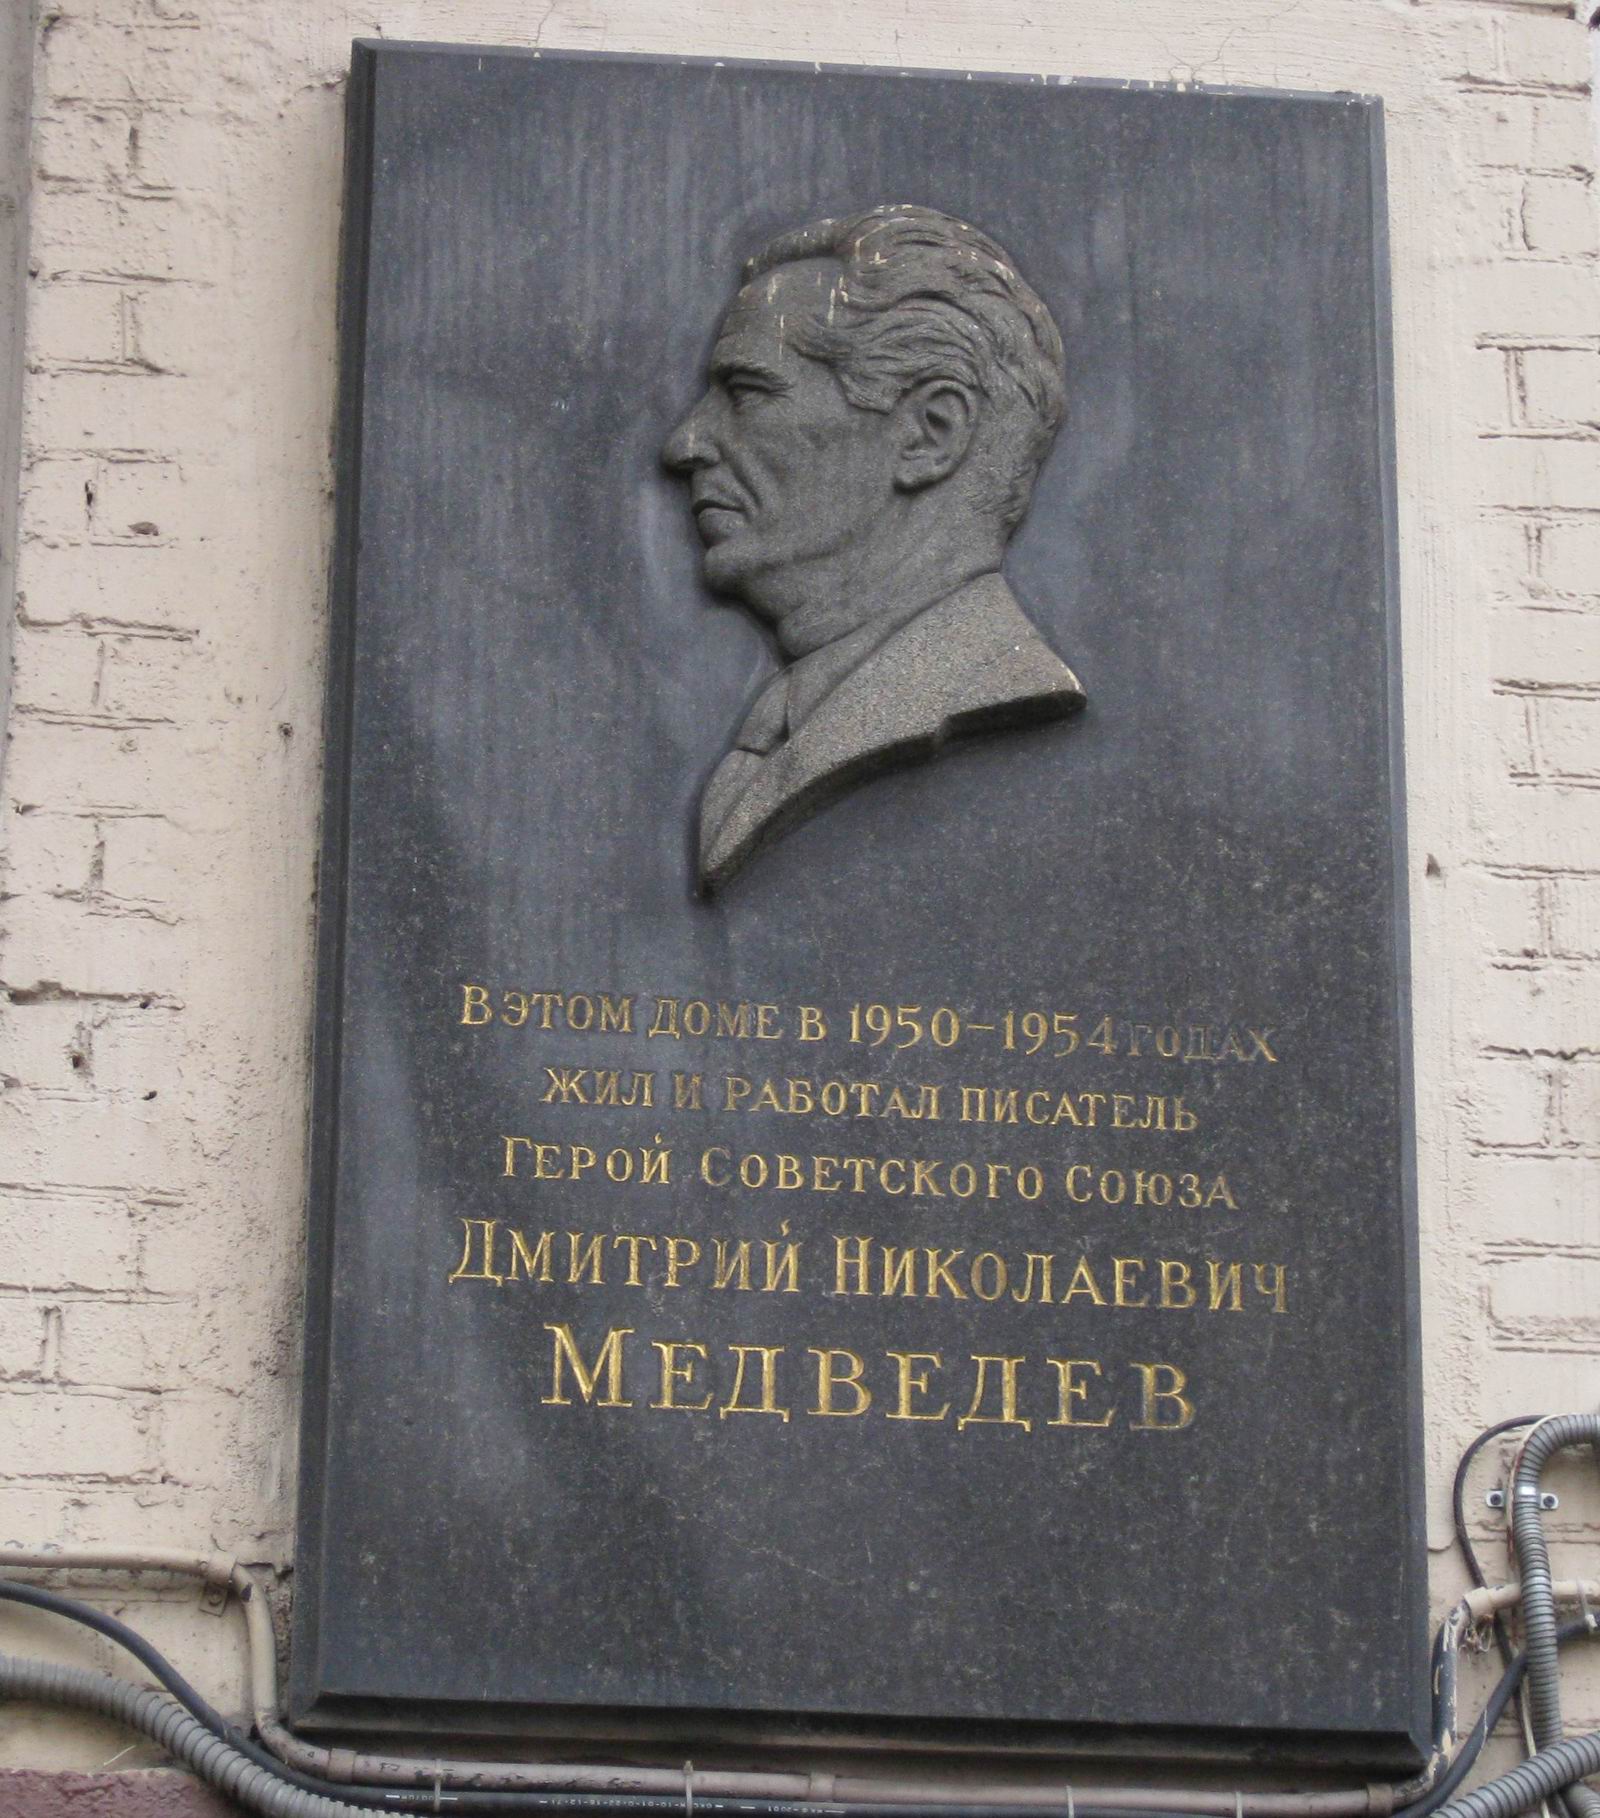 Мемориальная доска Медведеву Д.Н. (1898–1954), в Старопименовском переулке, дом 16, открыта 1.6.1957.